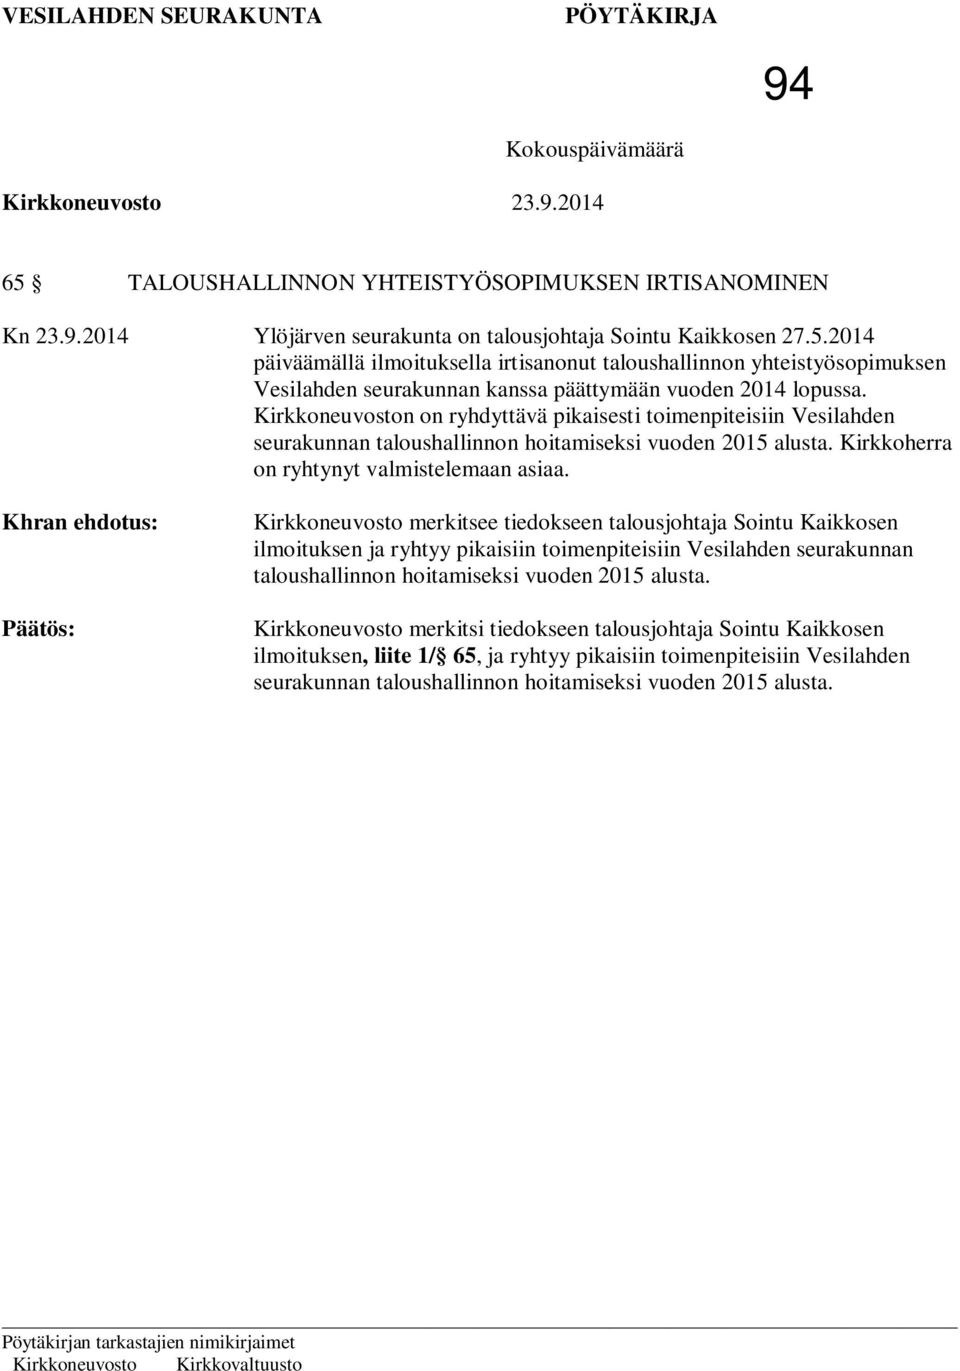 Kirkkoneuvosto merkitsee tiedokseen talousjohtaja Sointu Kaikkosen ilmoituksen ja ryhtyy pikaisiin toimenpiteisiin Vesilahden seurakunnan taloushallinnon hoitamiseksi vuoden 2015 alusta.